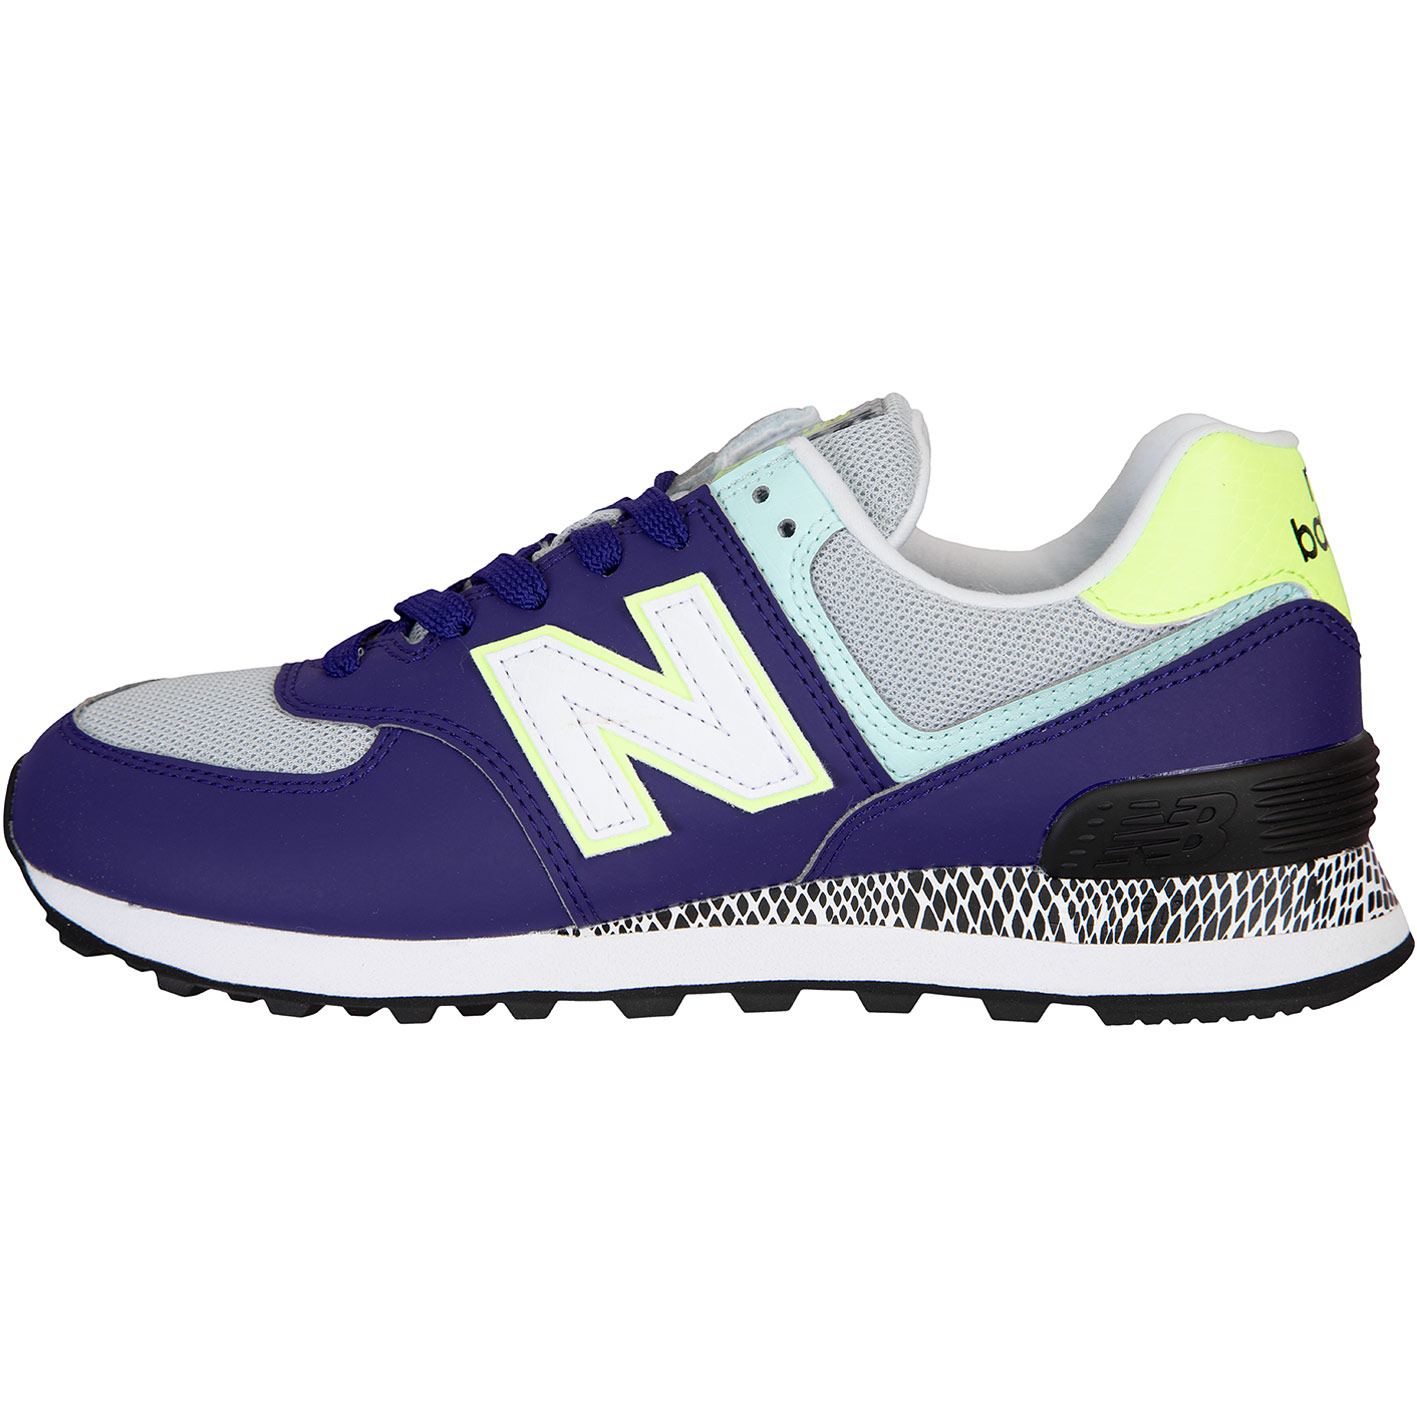 ☆ New Balance NB 574 Damen Sneaker Schuhe lila - hier bestellen!